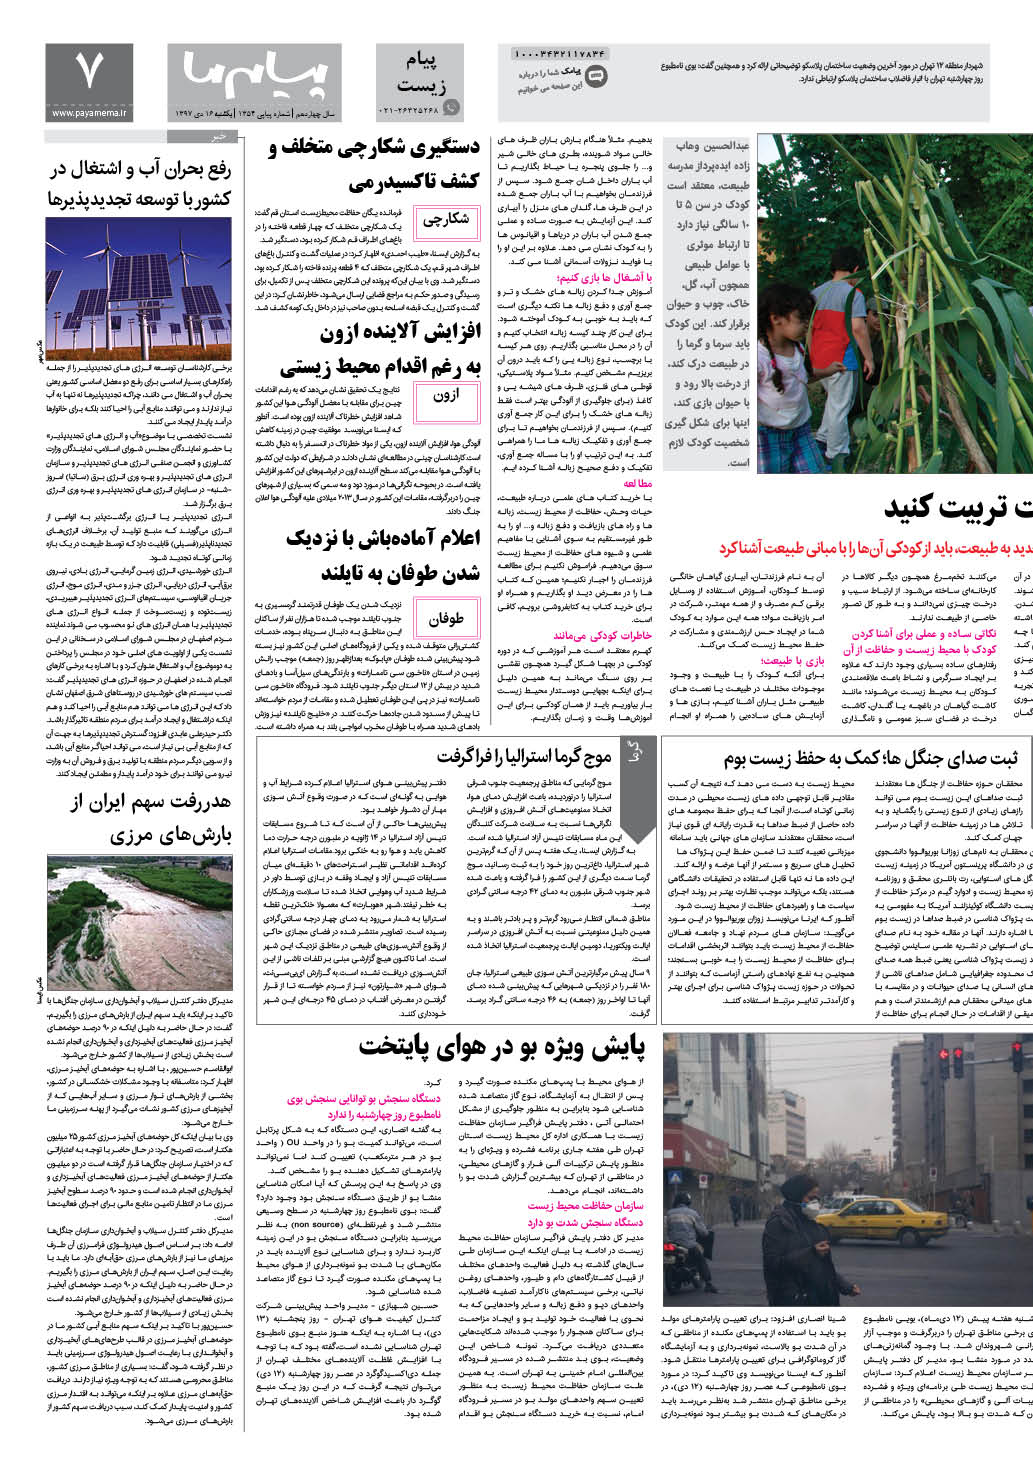 صفحه پیام زیست شماره 1354 روزنامه پیام ما